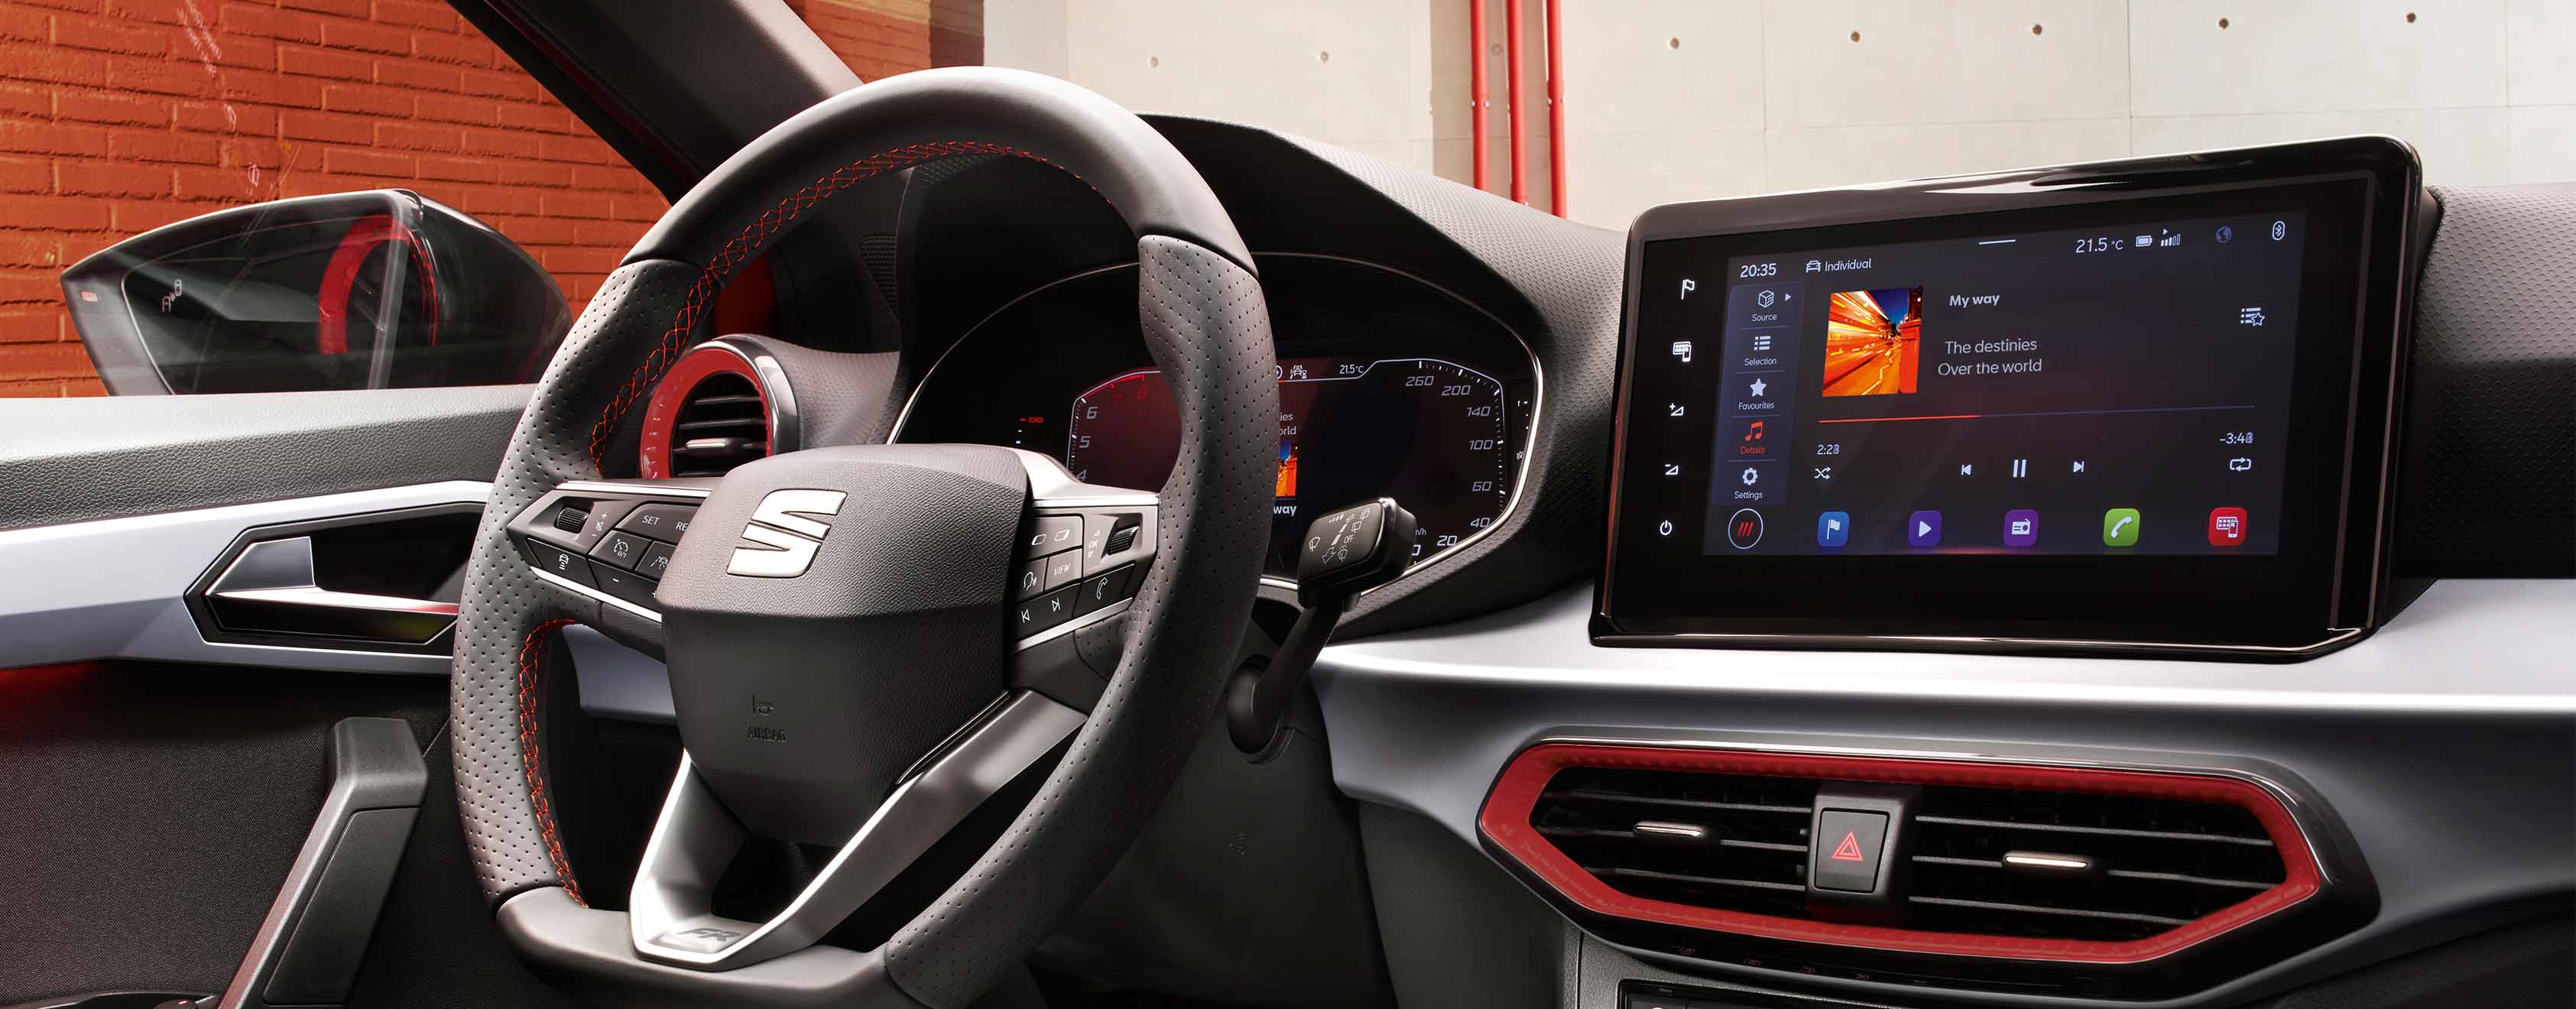 SEAT Ibiza, vista interna sul volante e sul touch screen flottante